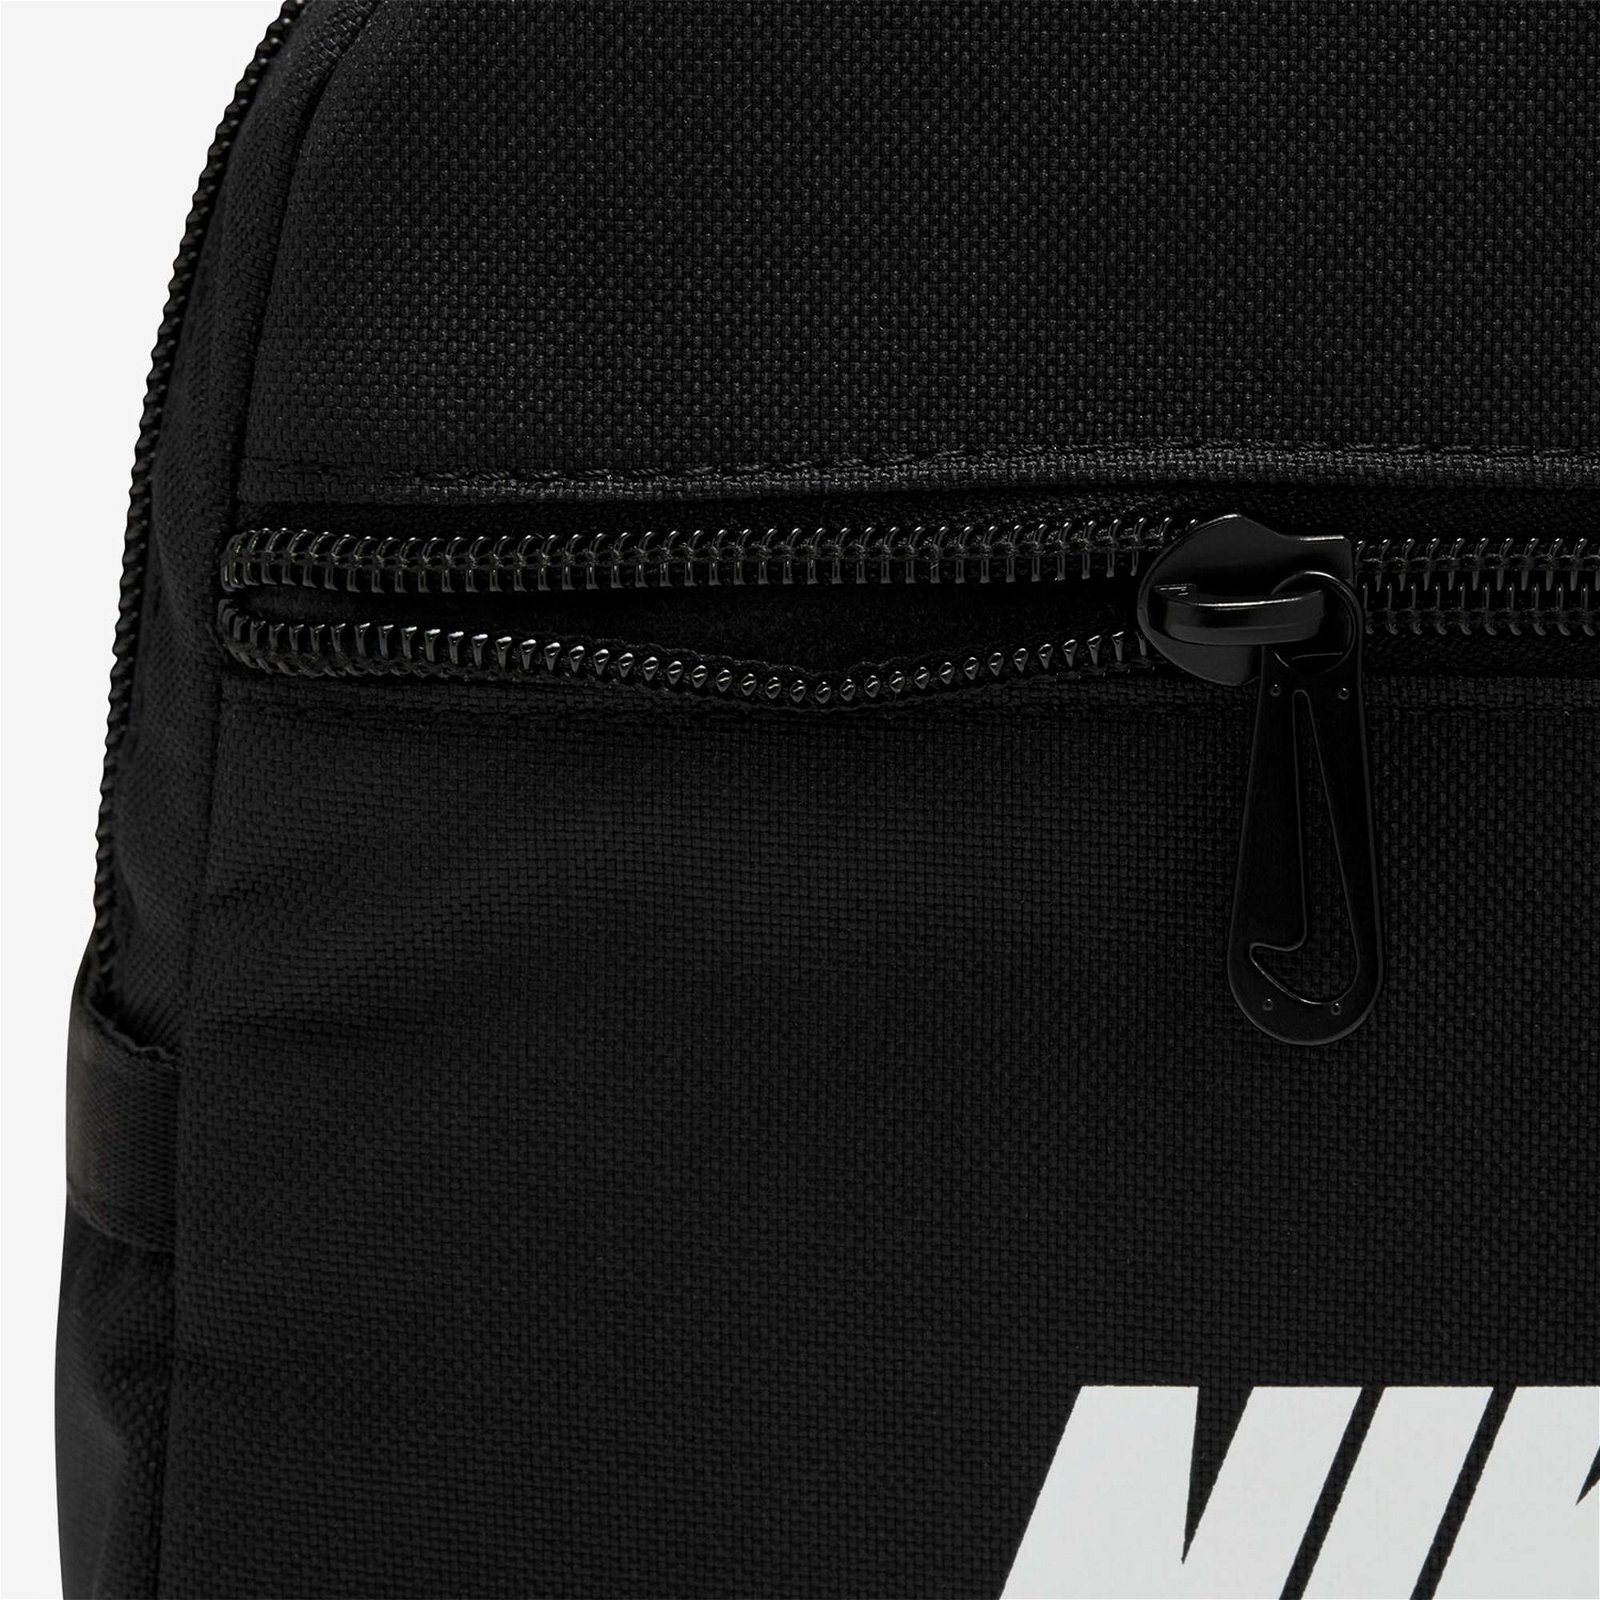 Nike Nsfutura 365 Mini Unisex Siyah Sırt Çantası